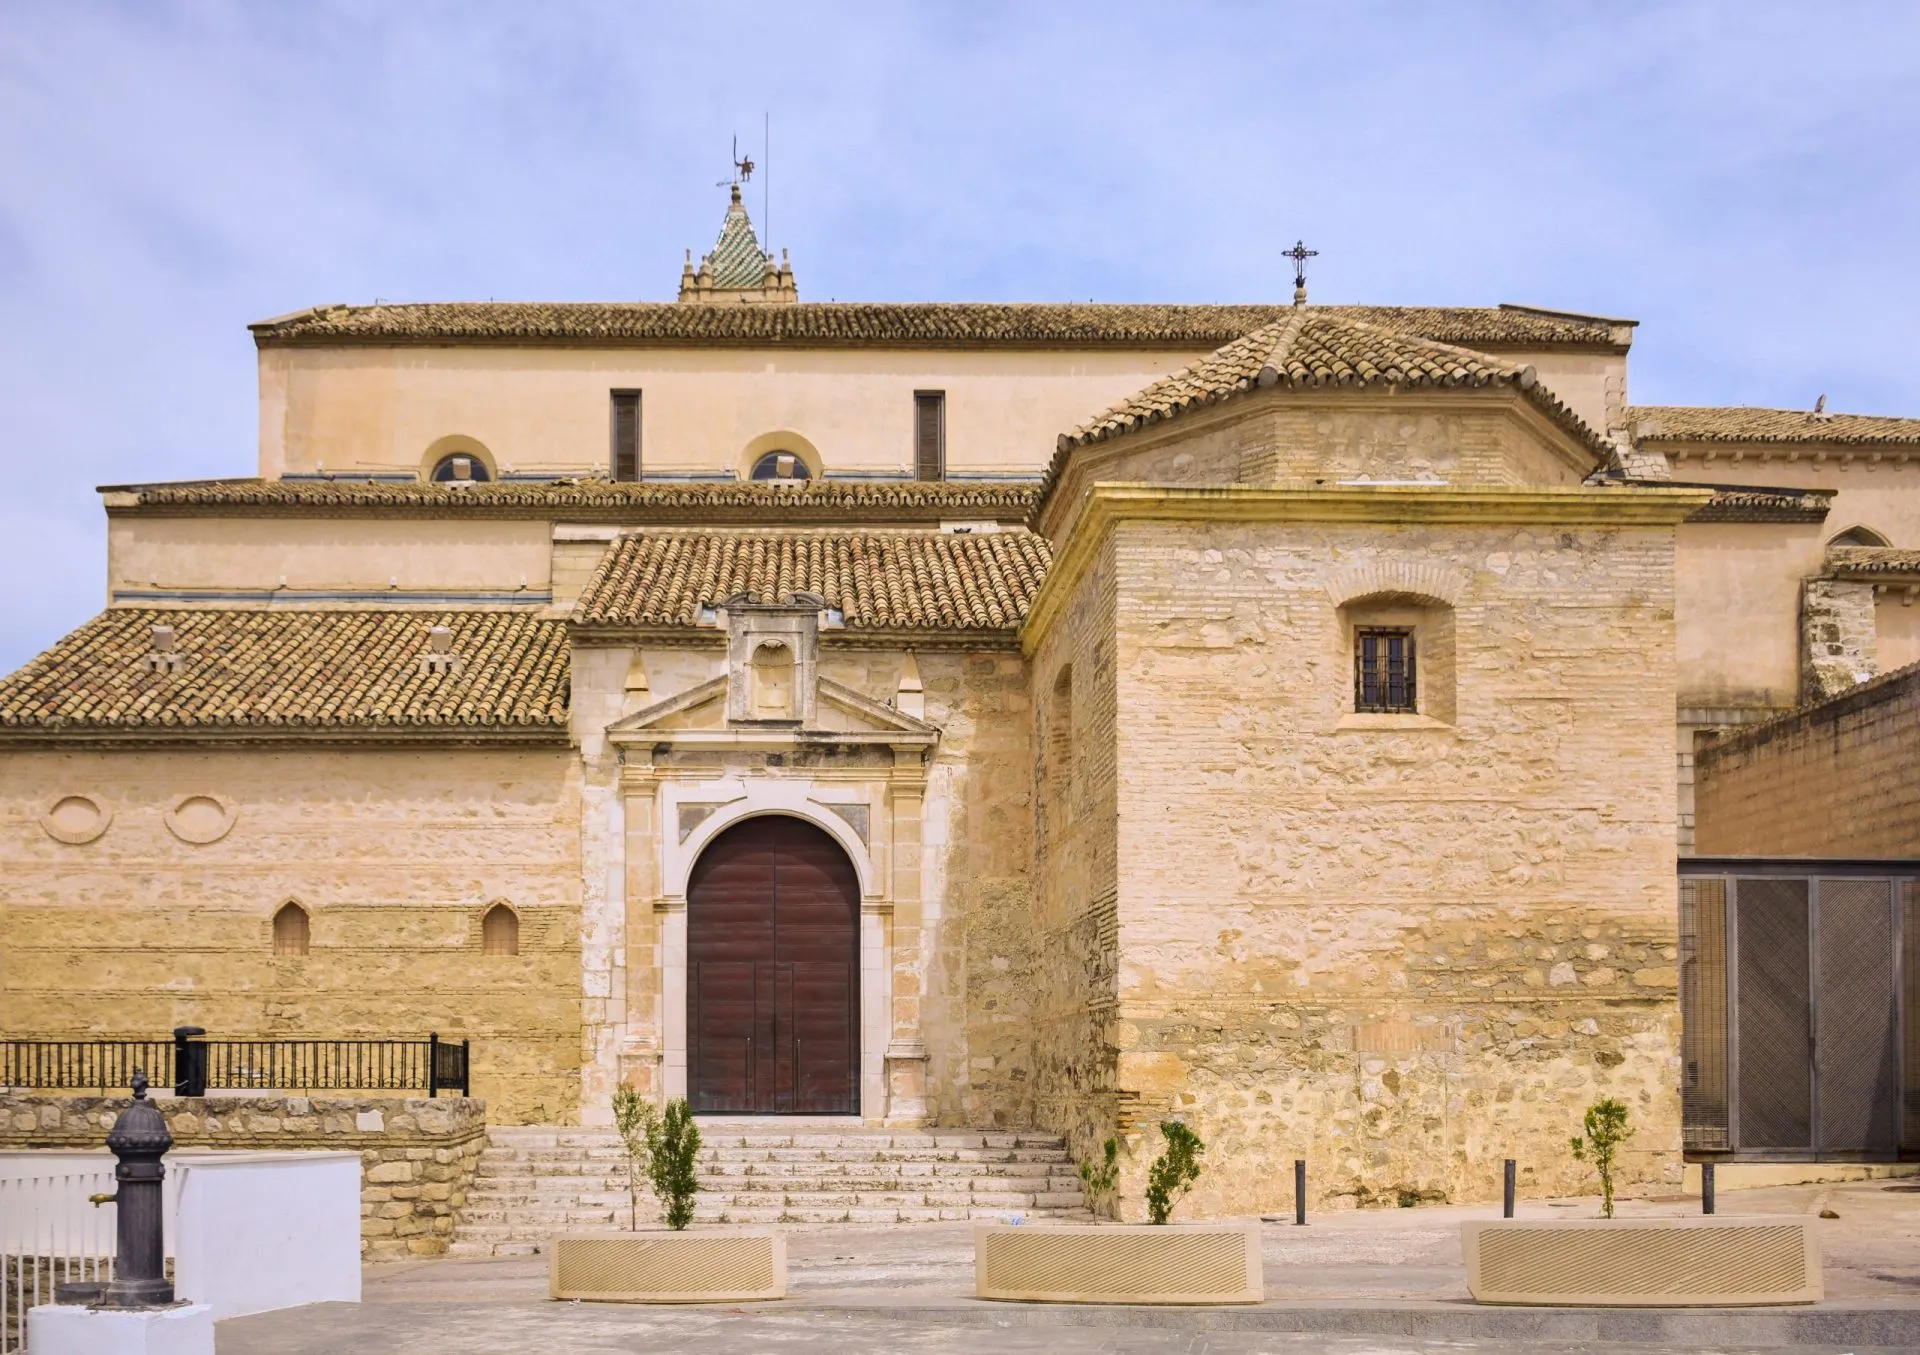 Baena, Córdoba, Turismo in Andalusia, Iglesia de Santa María la Mayor